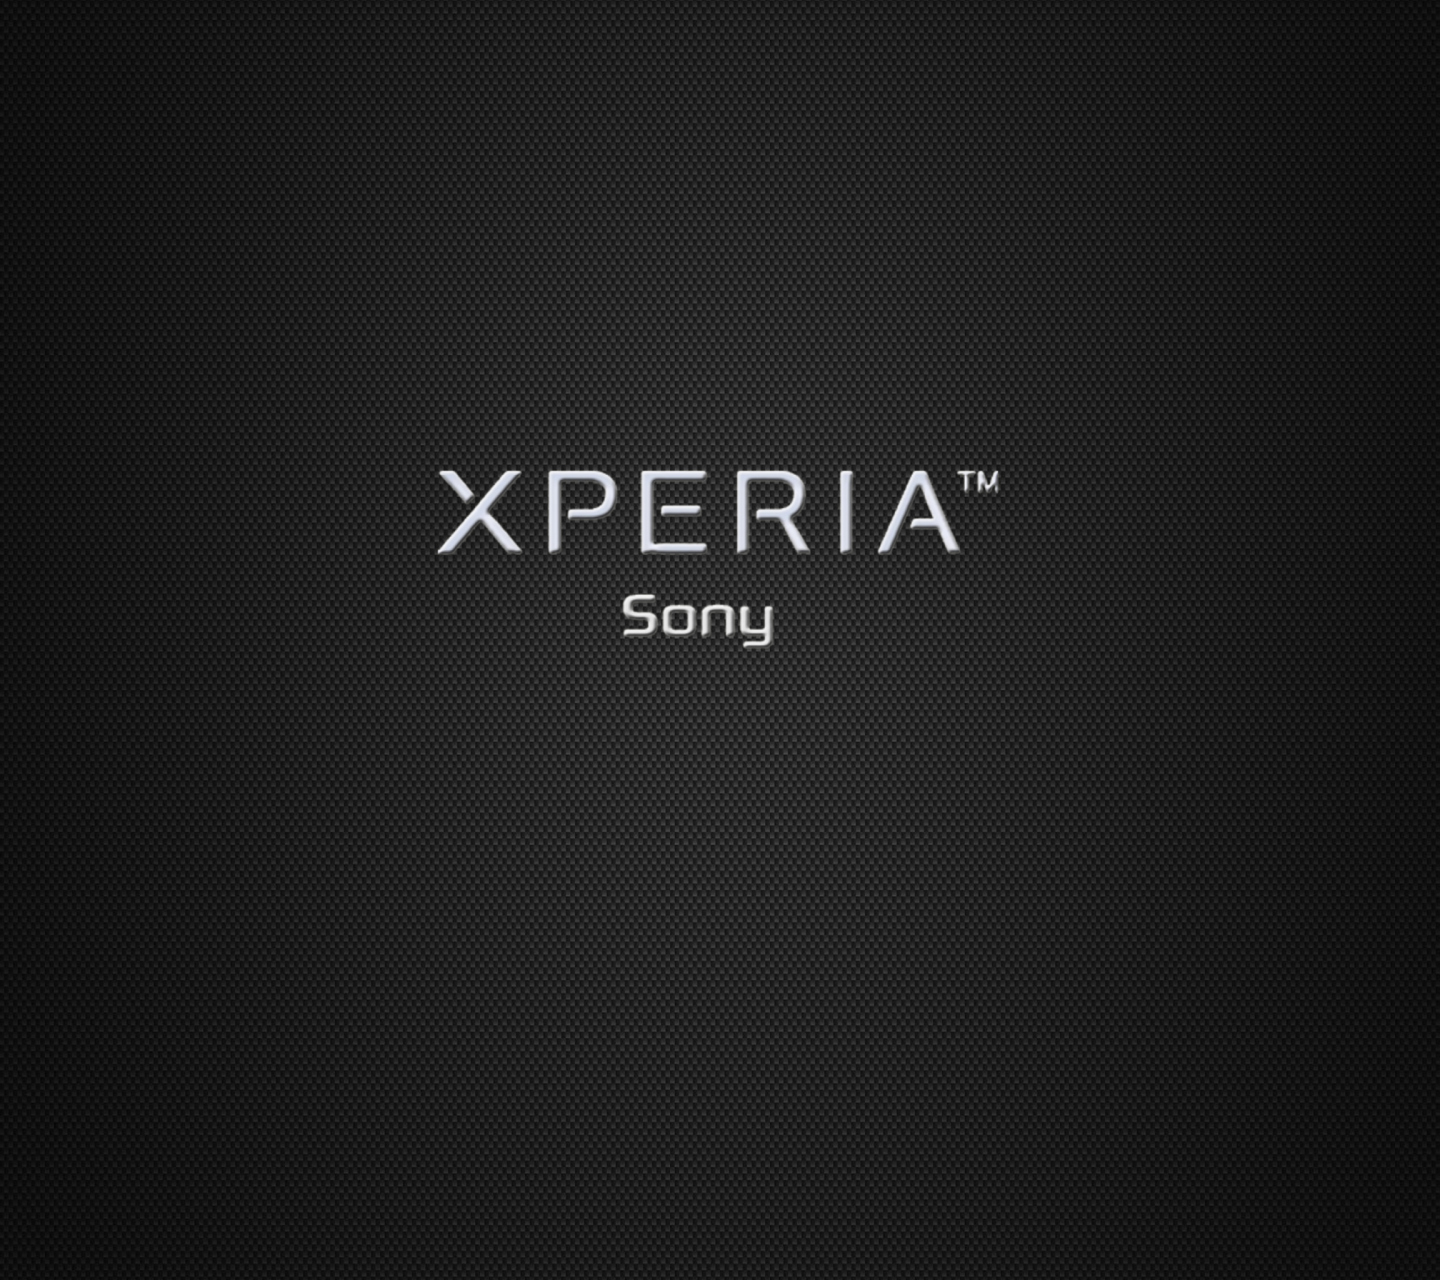 Sony Xperia screenshot #1 1440x1280